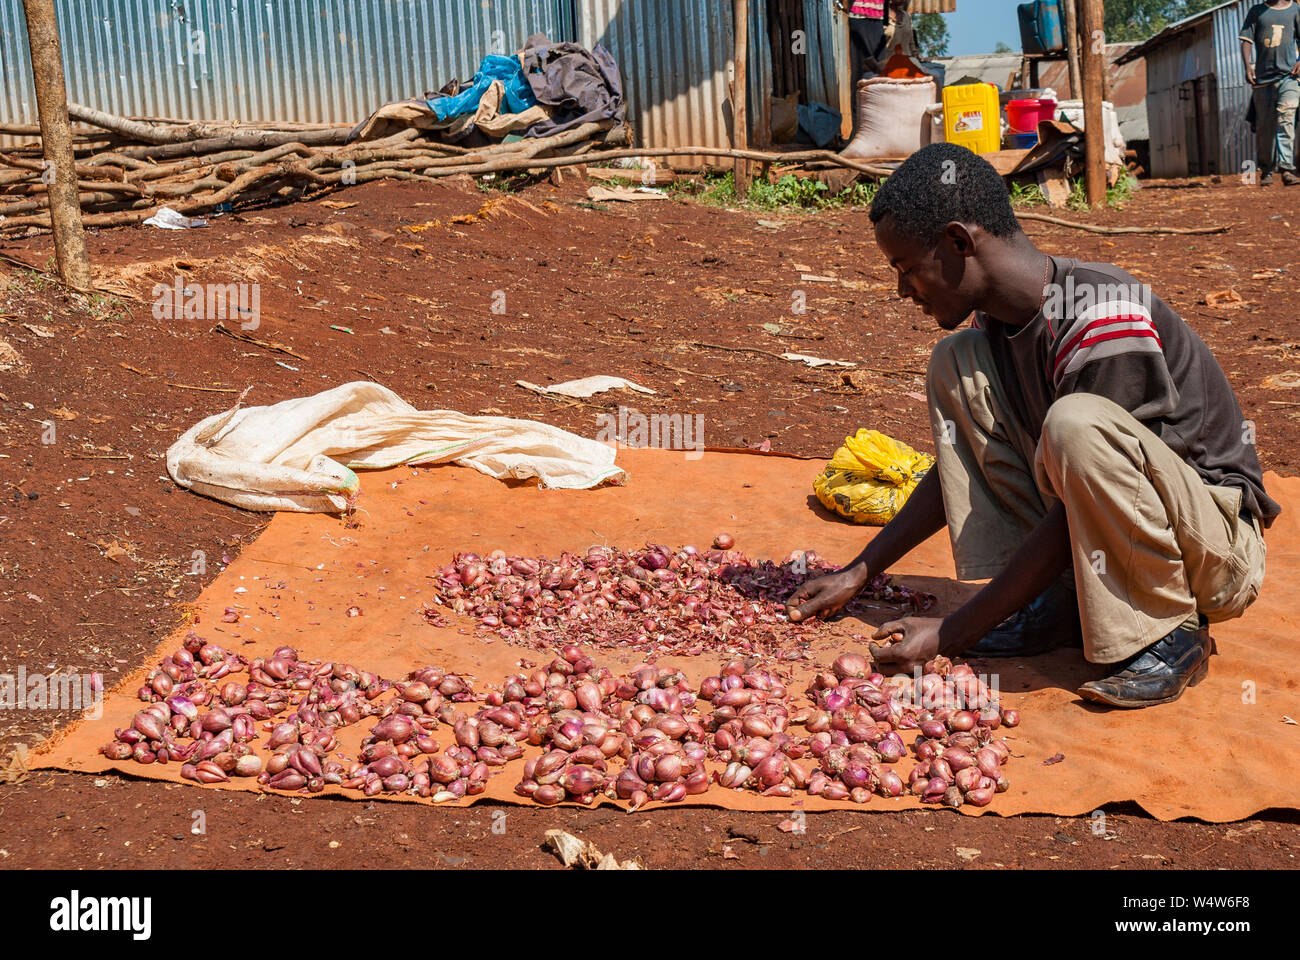 L'organisation de l'homme home produit des oignons sur un tapis dans un marché rural dans l'ouest de l'Ethiopie Banque D'Images